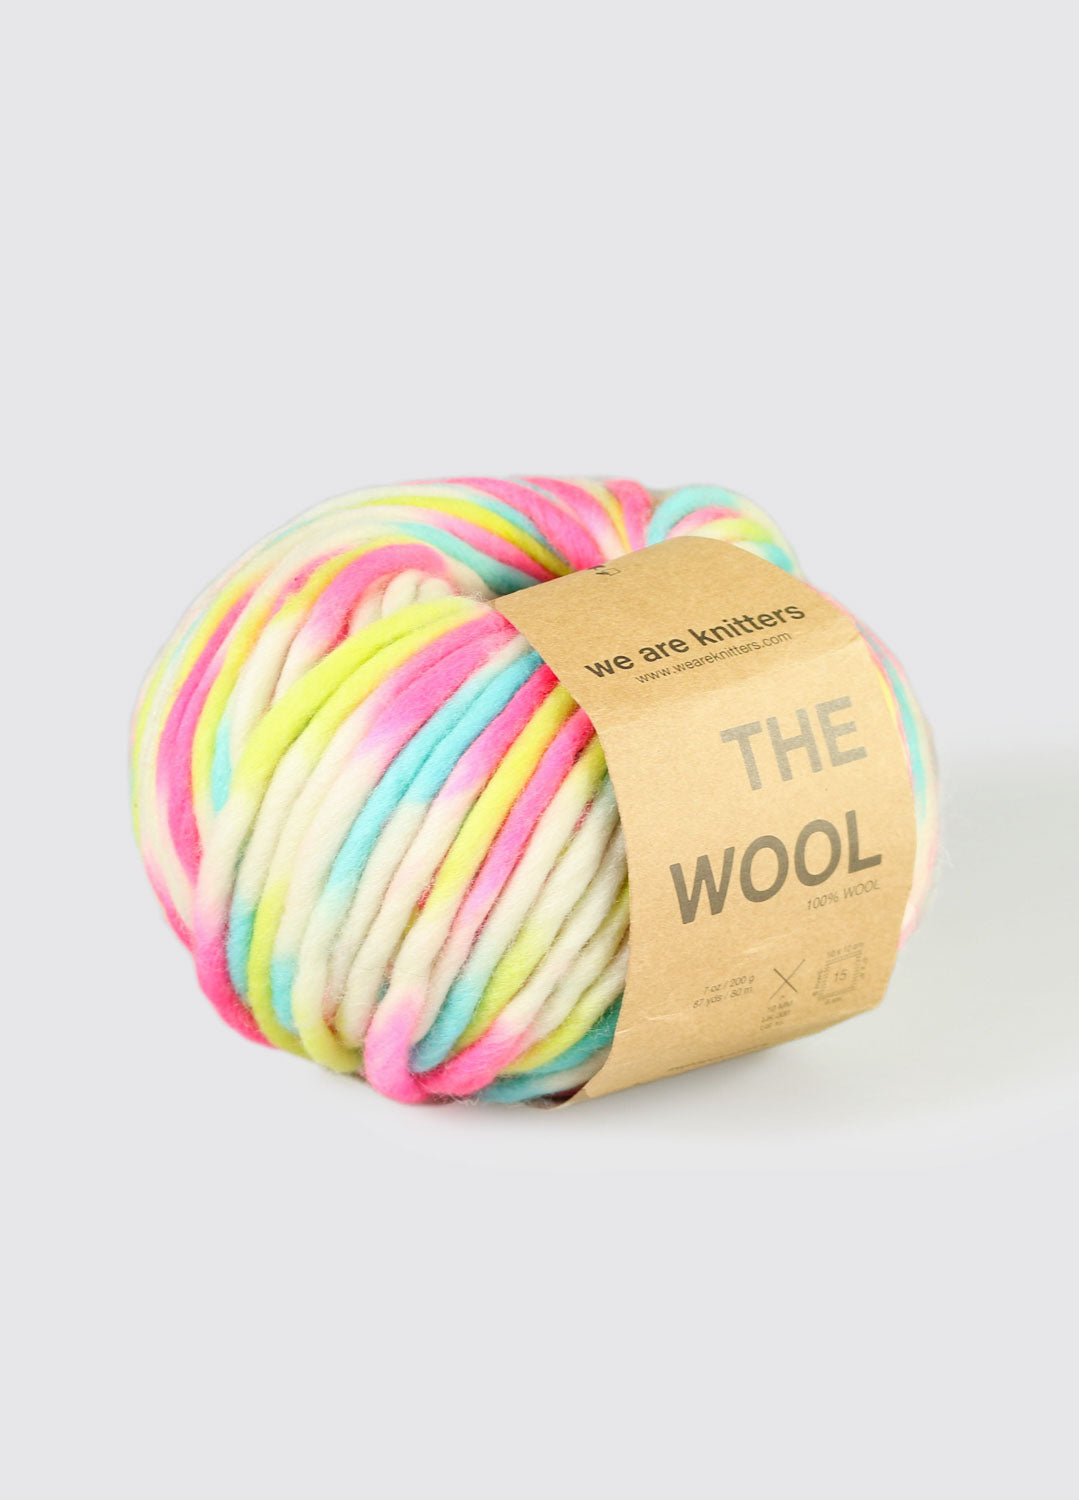 The Wool Neon Marshmallow